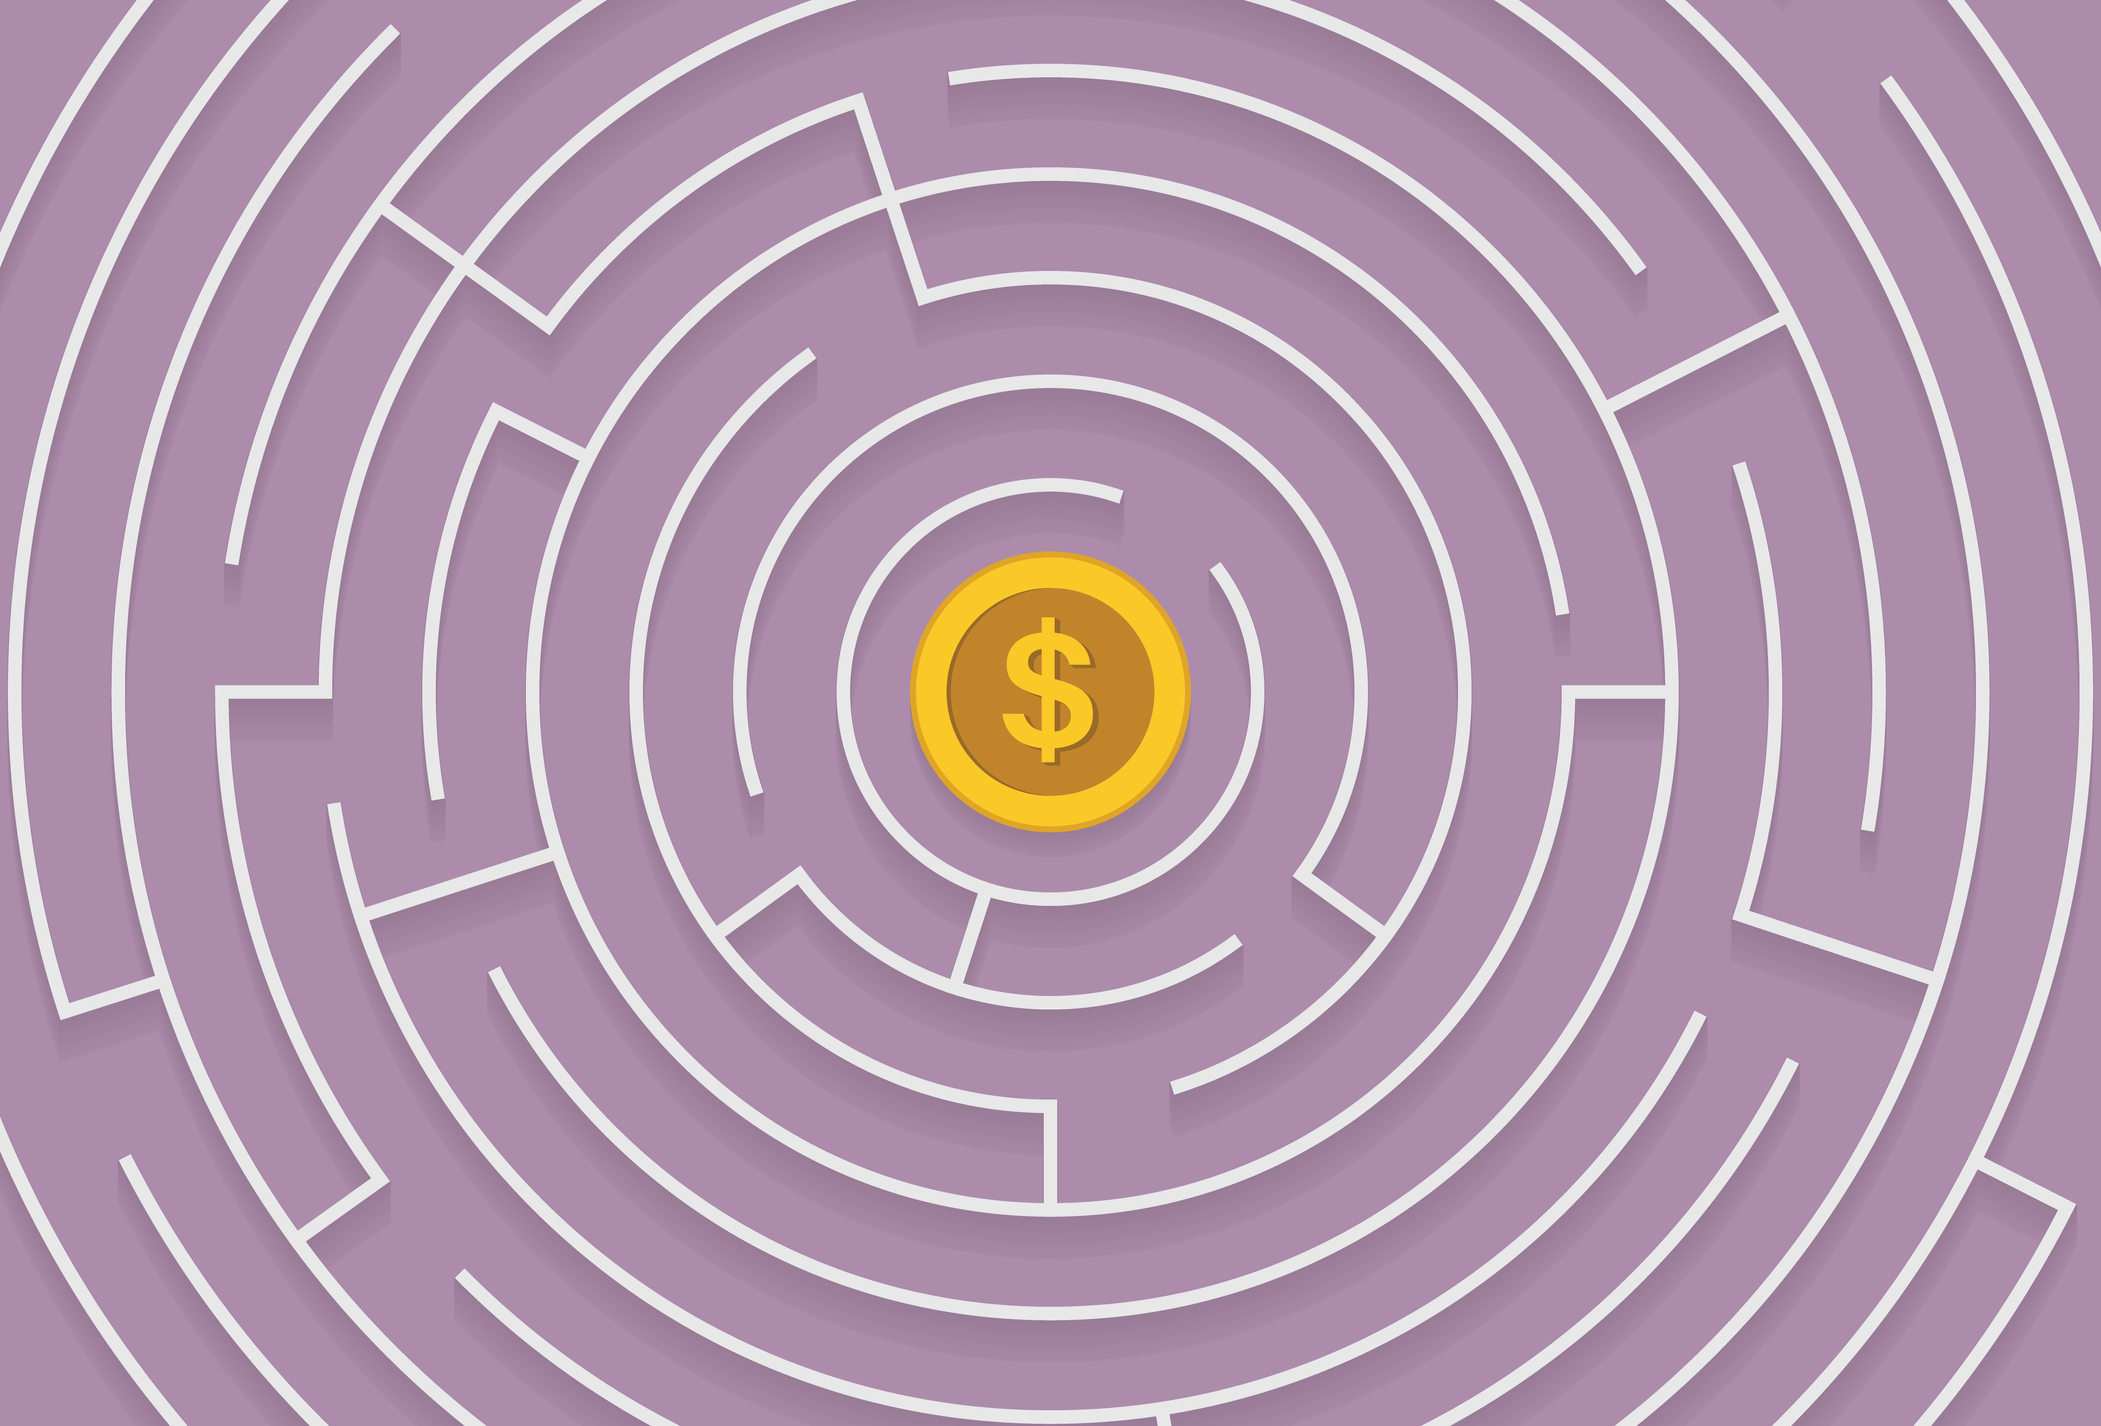 labyrinthe avec une pièce d'un dollar américain au milieu